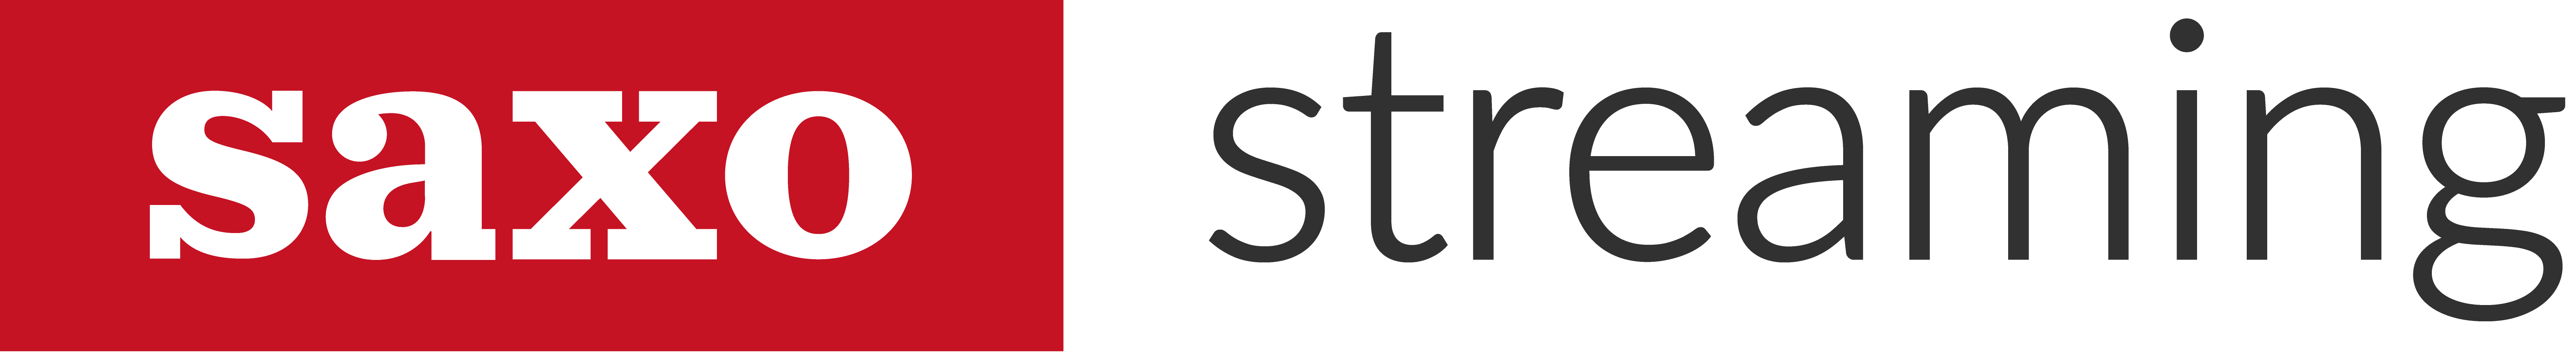 Saxo Streaming logo